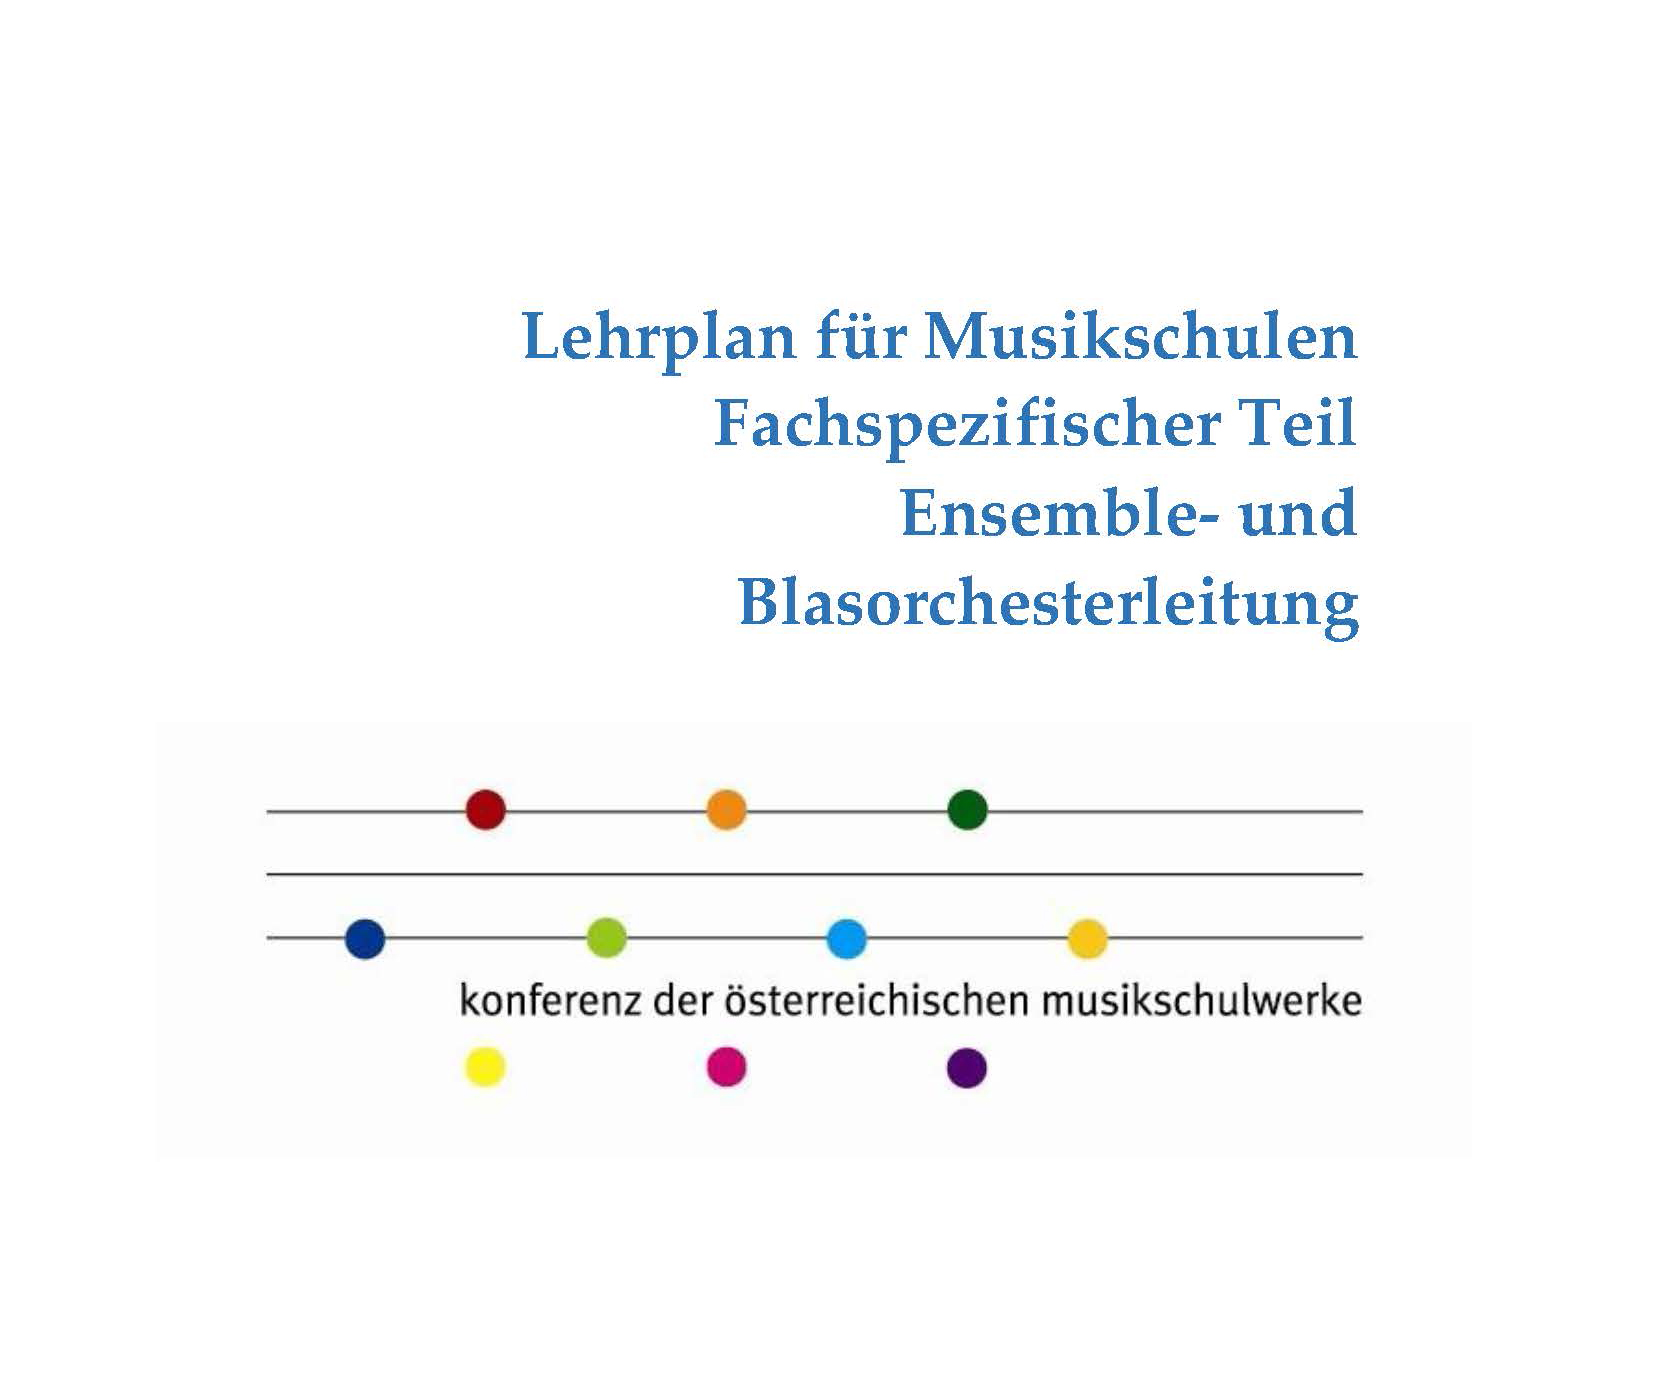 Lehrplan für Musikschulen - Fachspezifischer Teil "Ensemble- und Blasorchesterleitung"